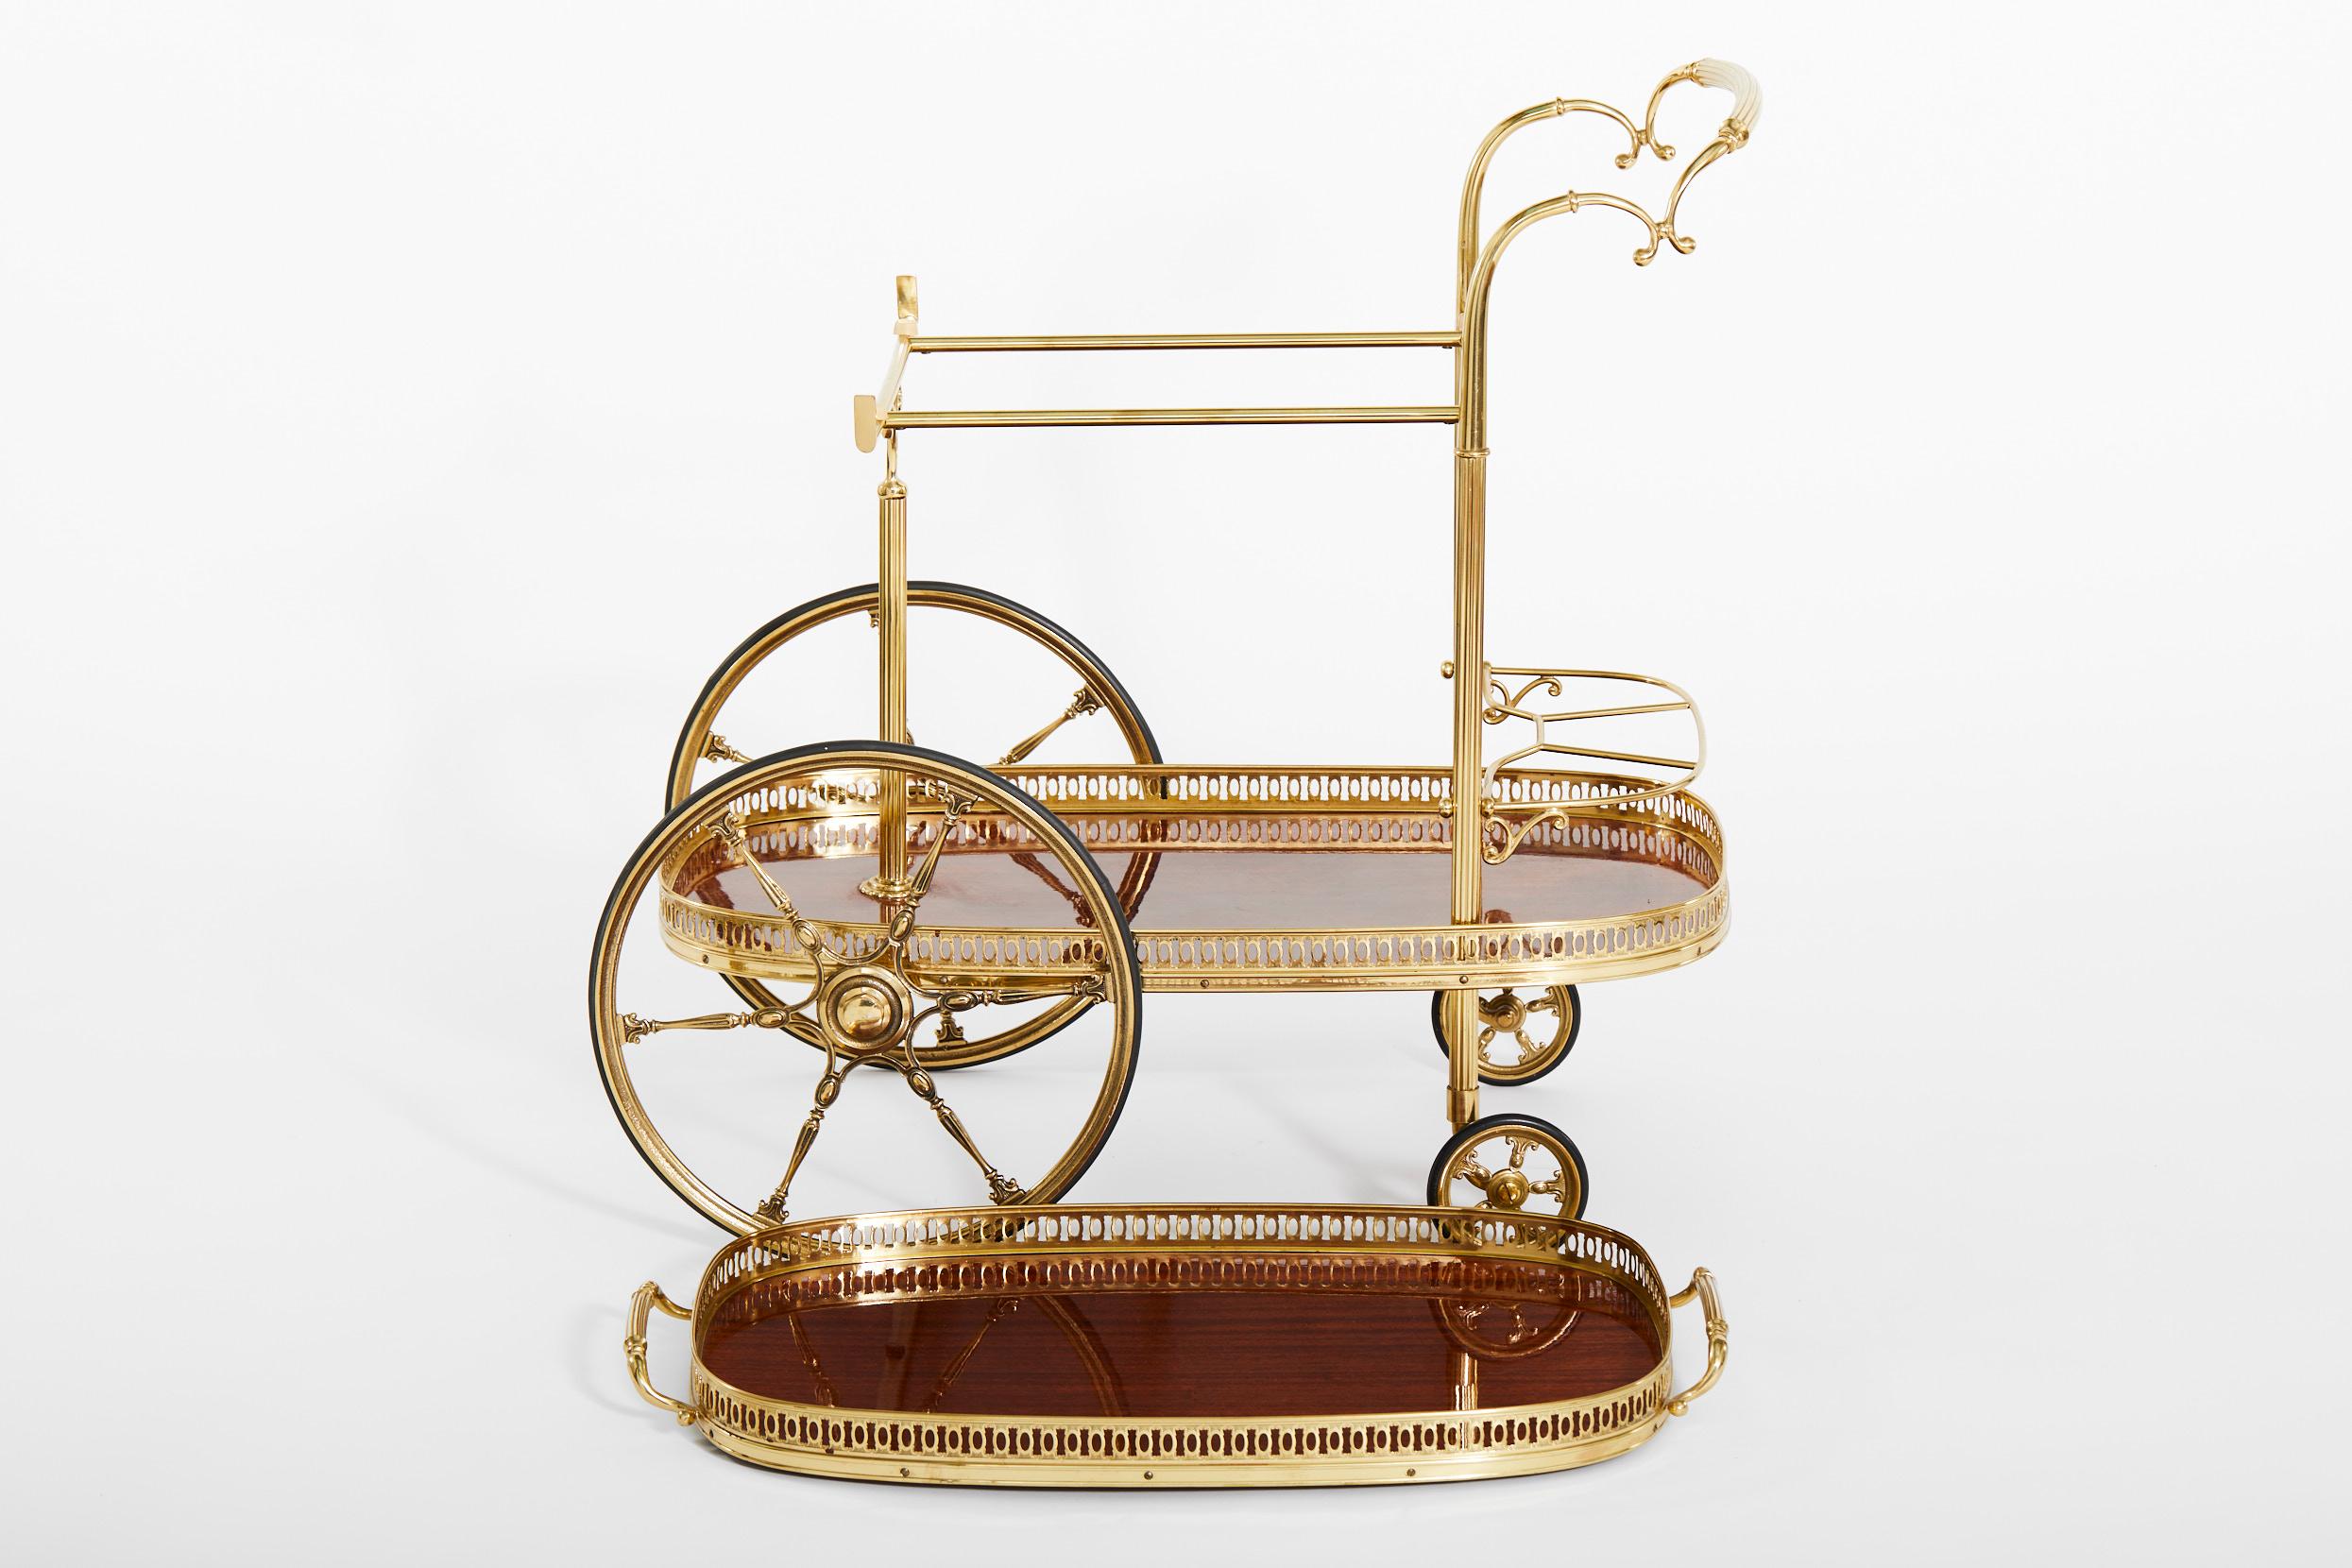 Hollywood Regency Mid-20th Century Italian Brass / Mahogany Bar Cart